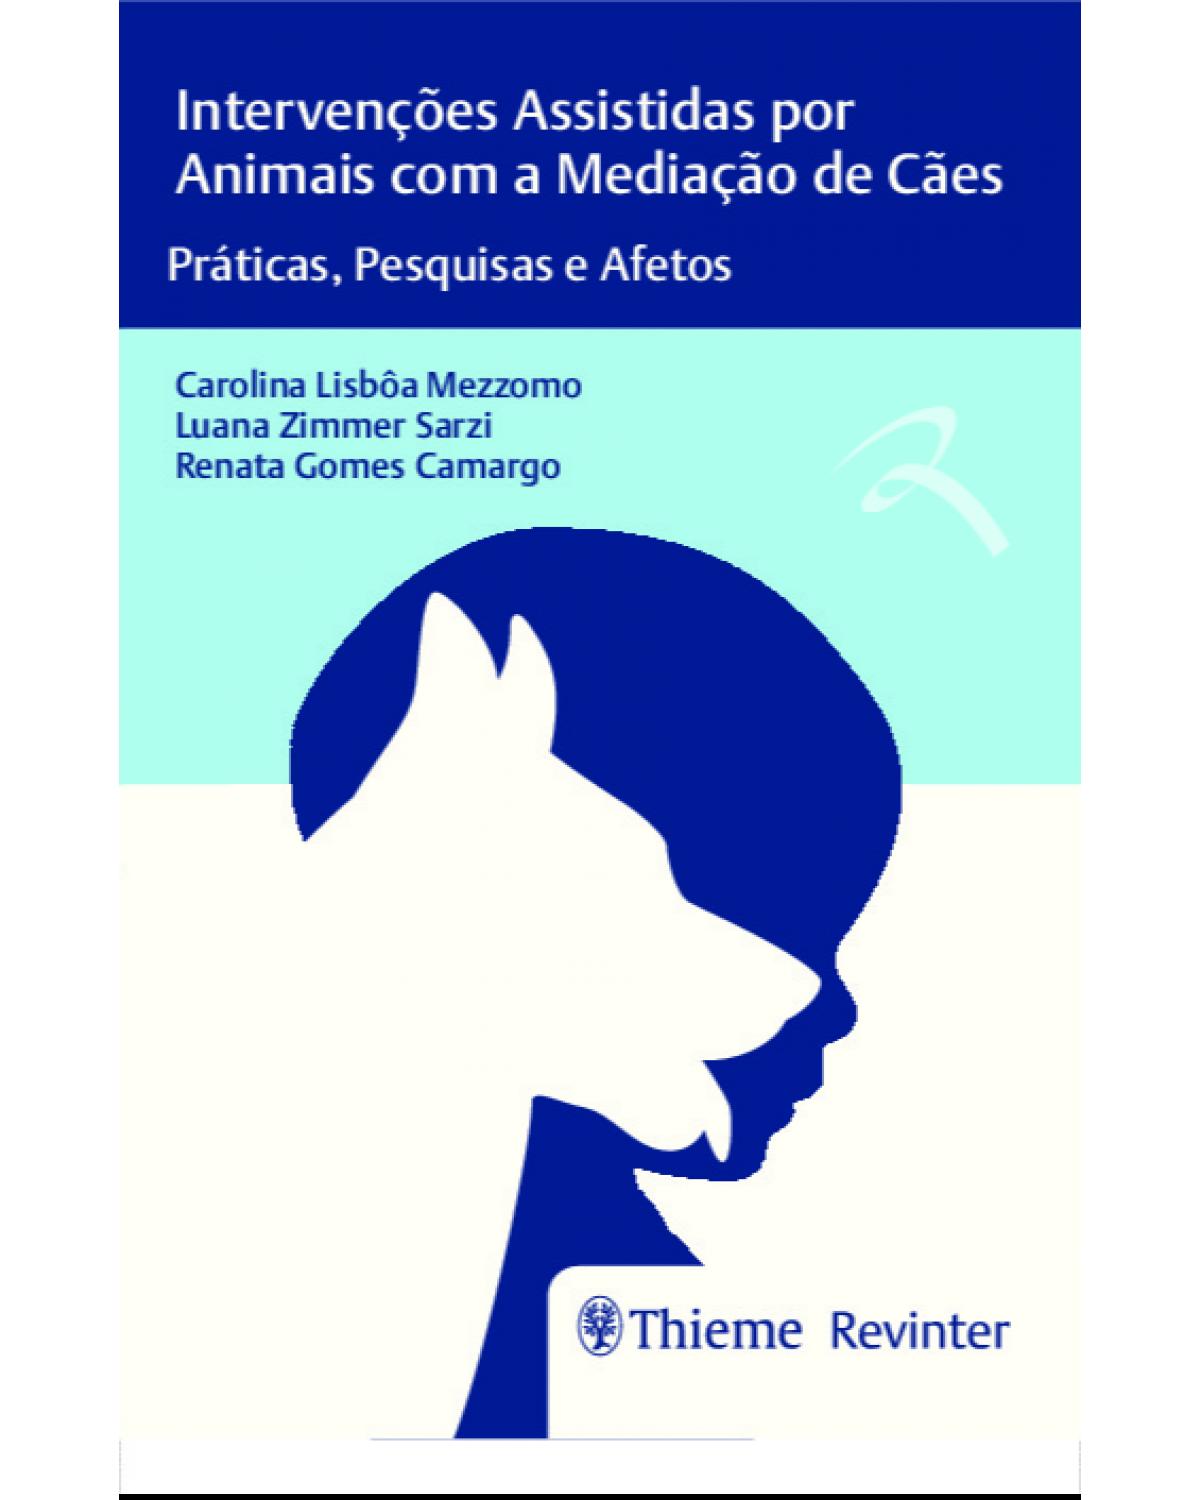 Intervenções assistidas por animais com a mediação de cães - práticas, pesquisas e afetos - 1ª Edição | 2021